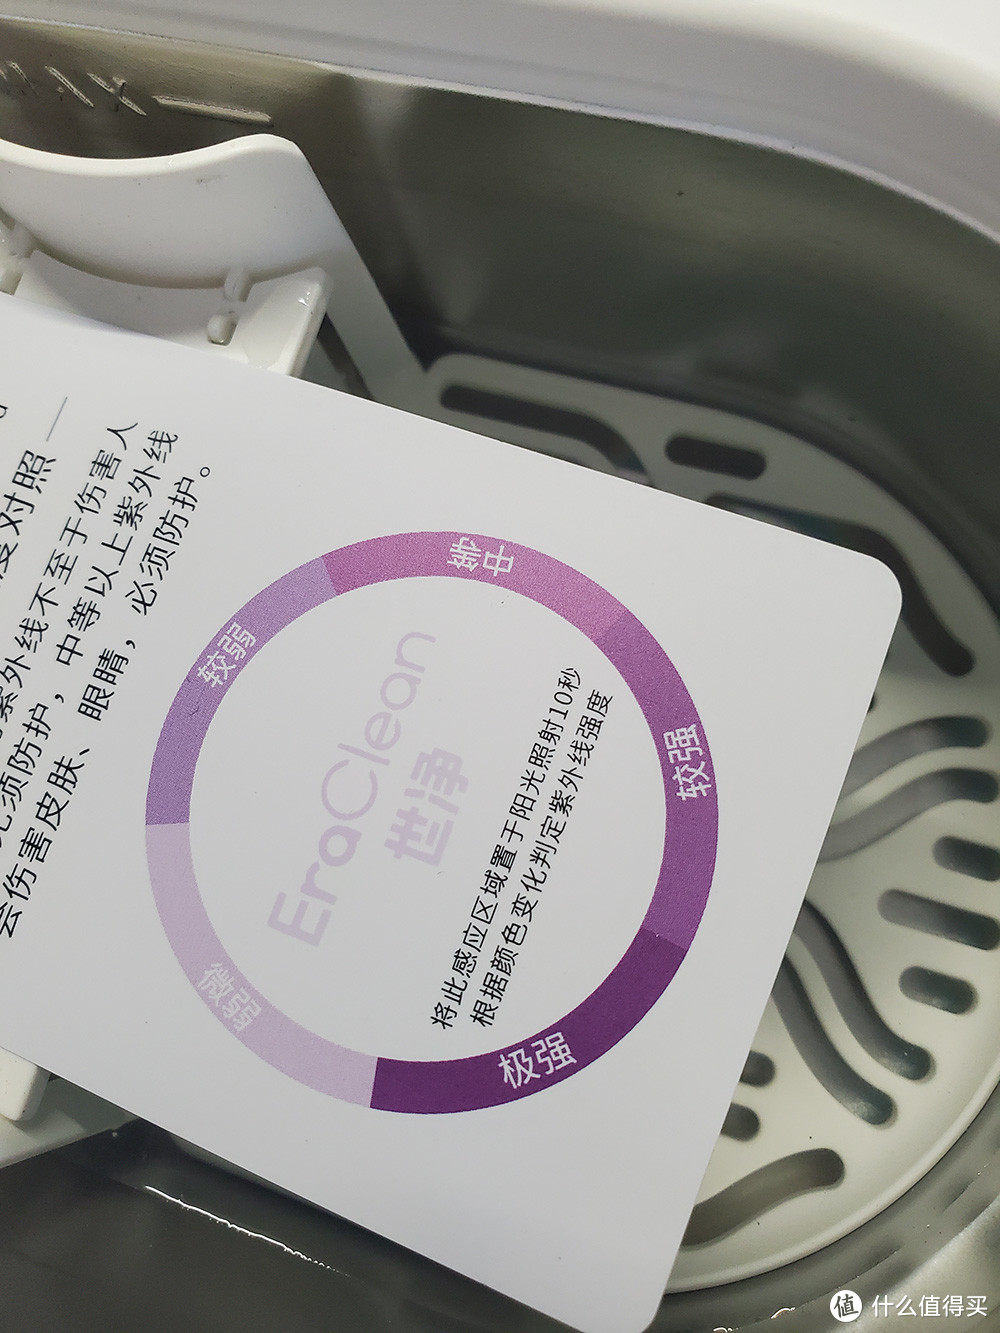 给你随身之物都来洗个澡——EraClean GC01 世净变频杀菌超声波清洗机